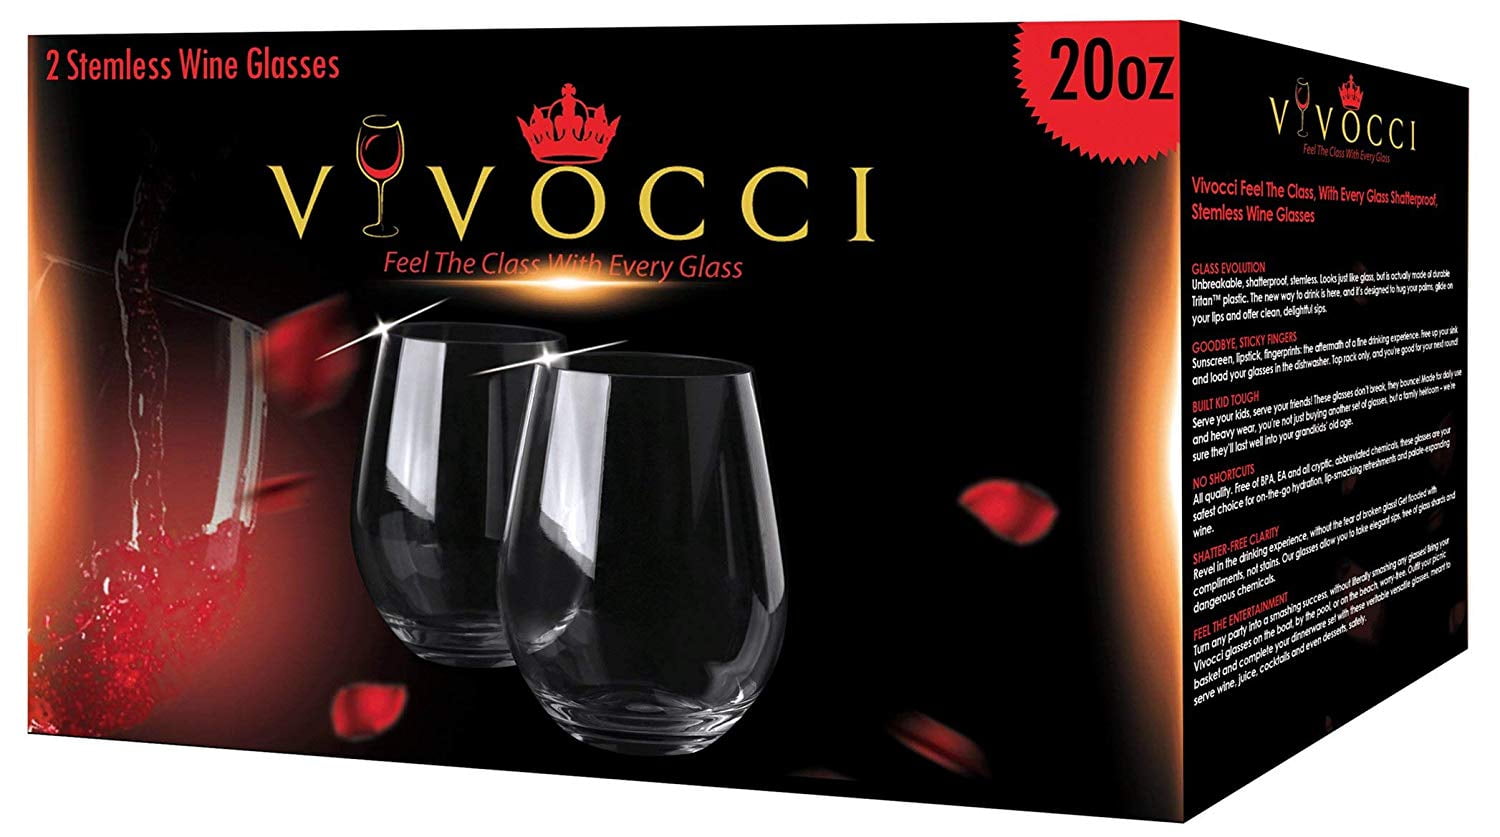 In Vino Veritas Prosecco Wine Glass - Set of 6, Glassware; UK